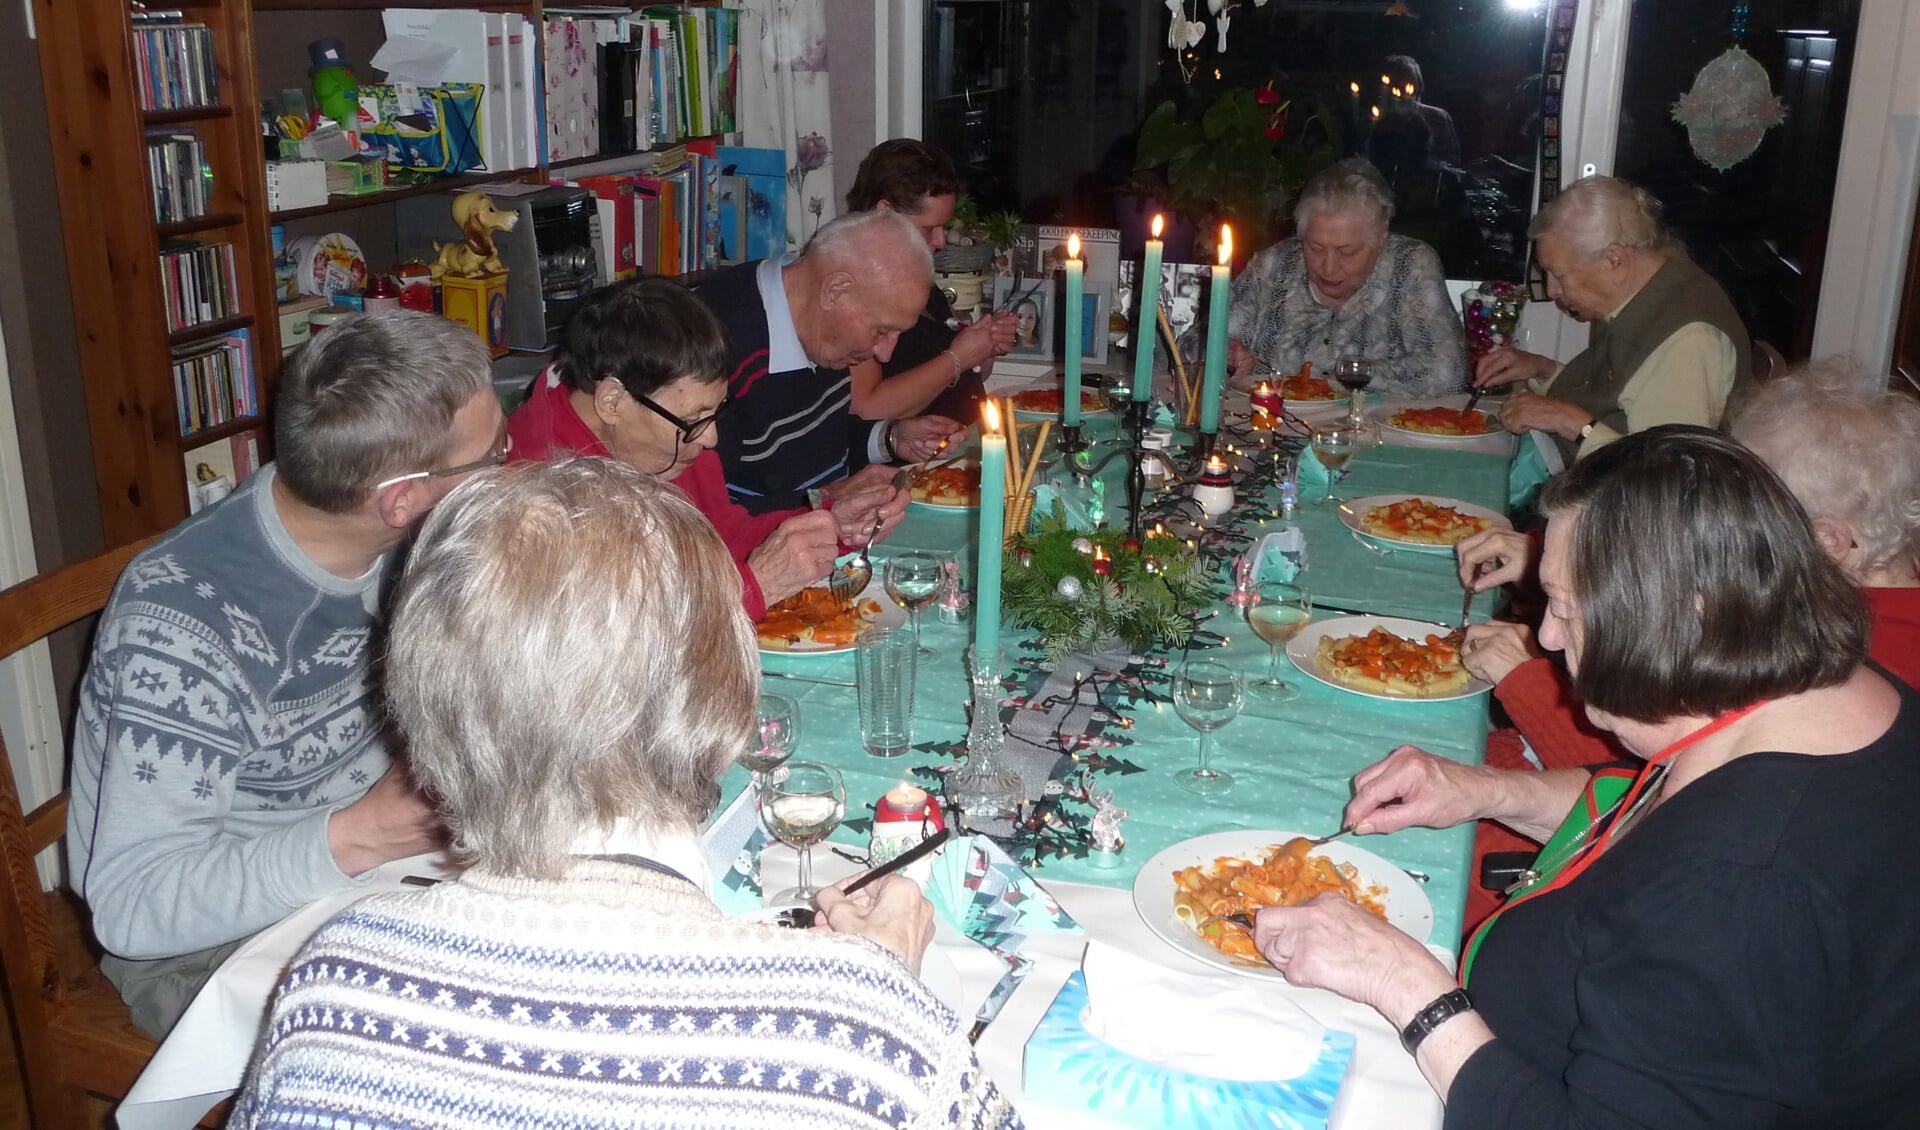 Op beide locaties genoten de gasten van een gezellig intiem diner, volledig in kerstsfeer.